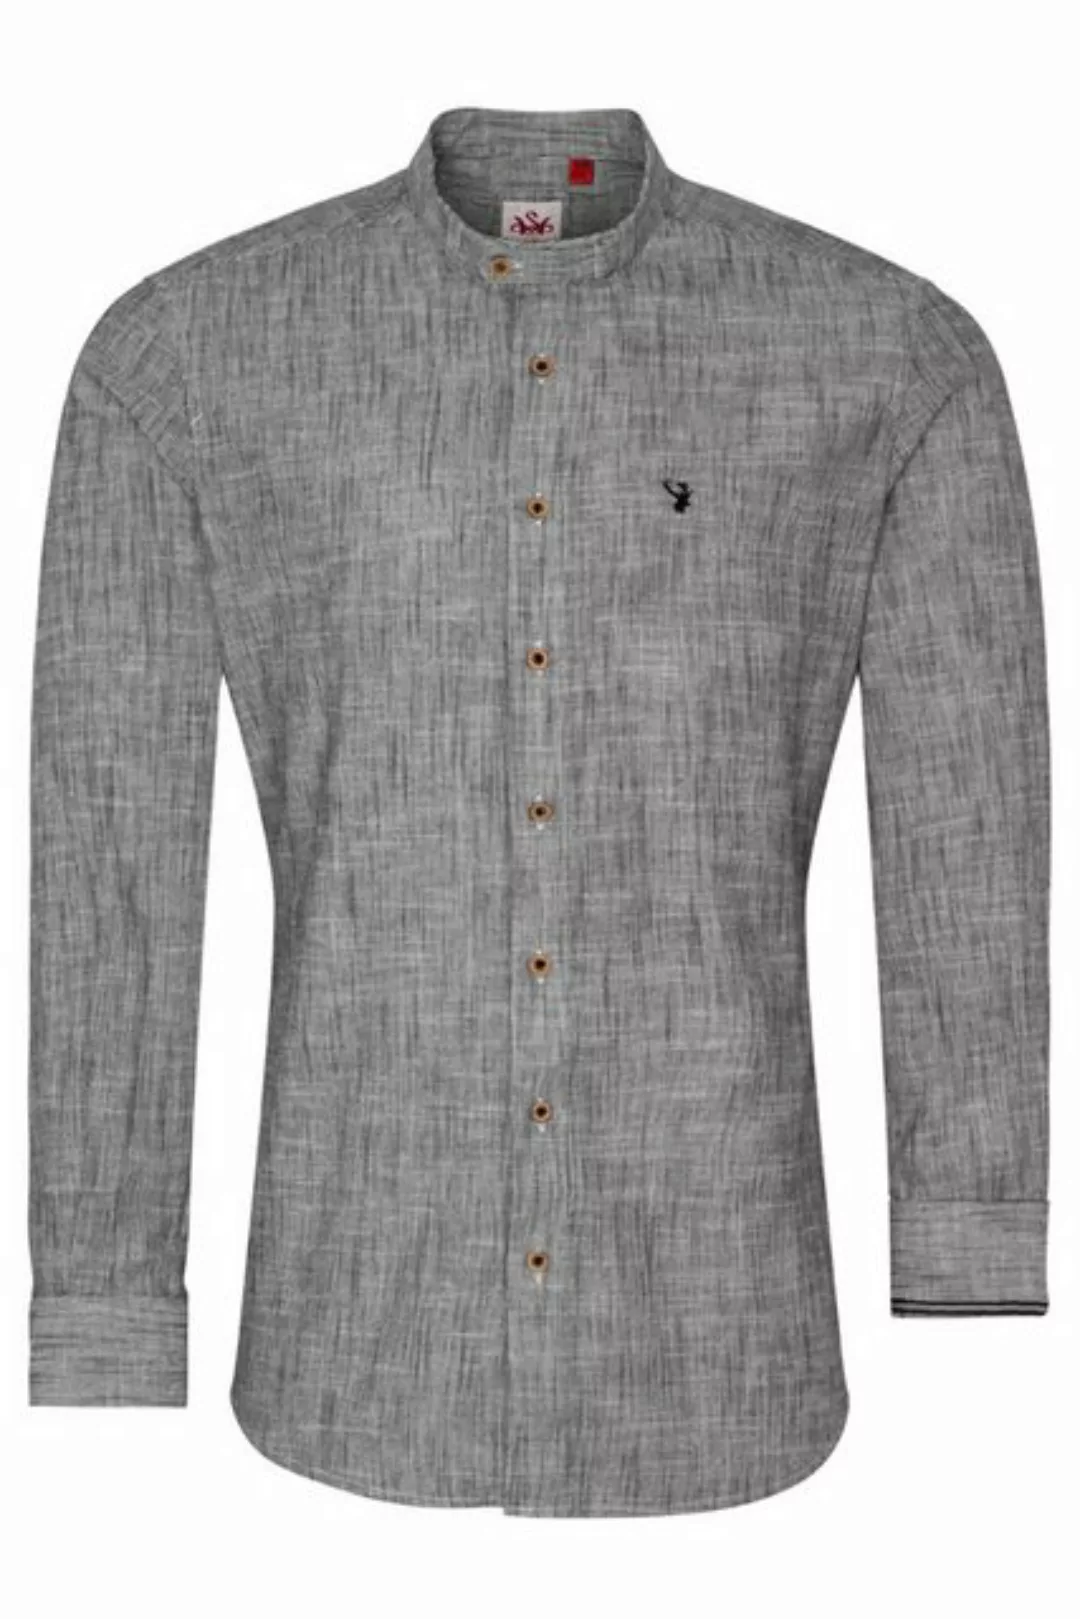 Spieth & Wensky Trachtenhemd Trachtenhemd - ARNOLD - schwarz/weiß günstig online kaufen